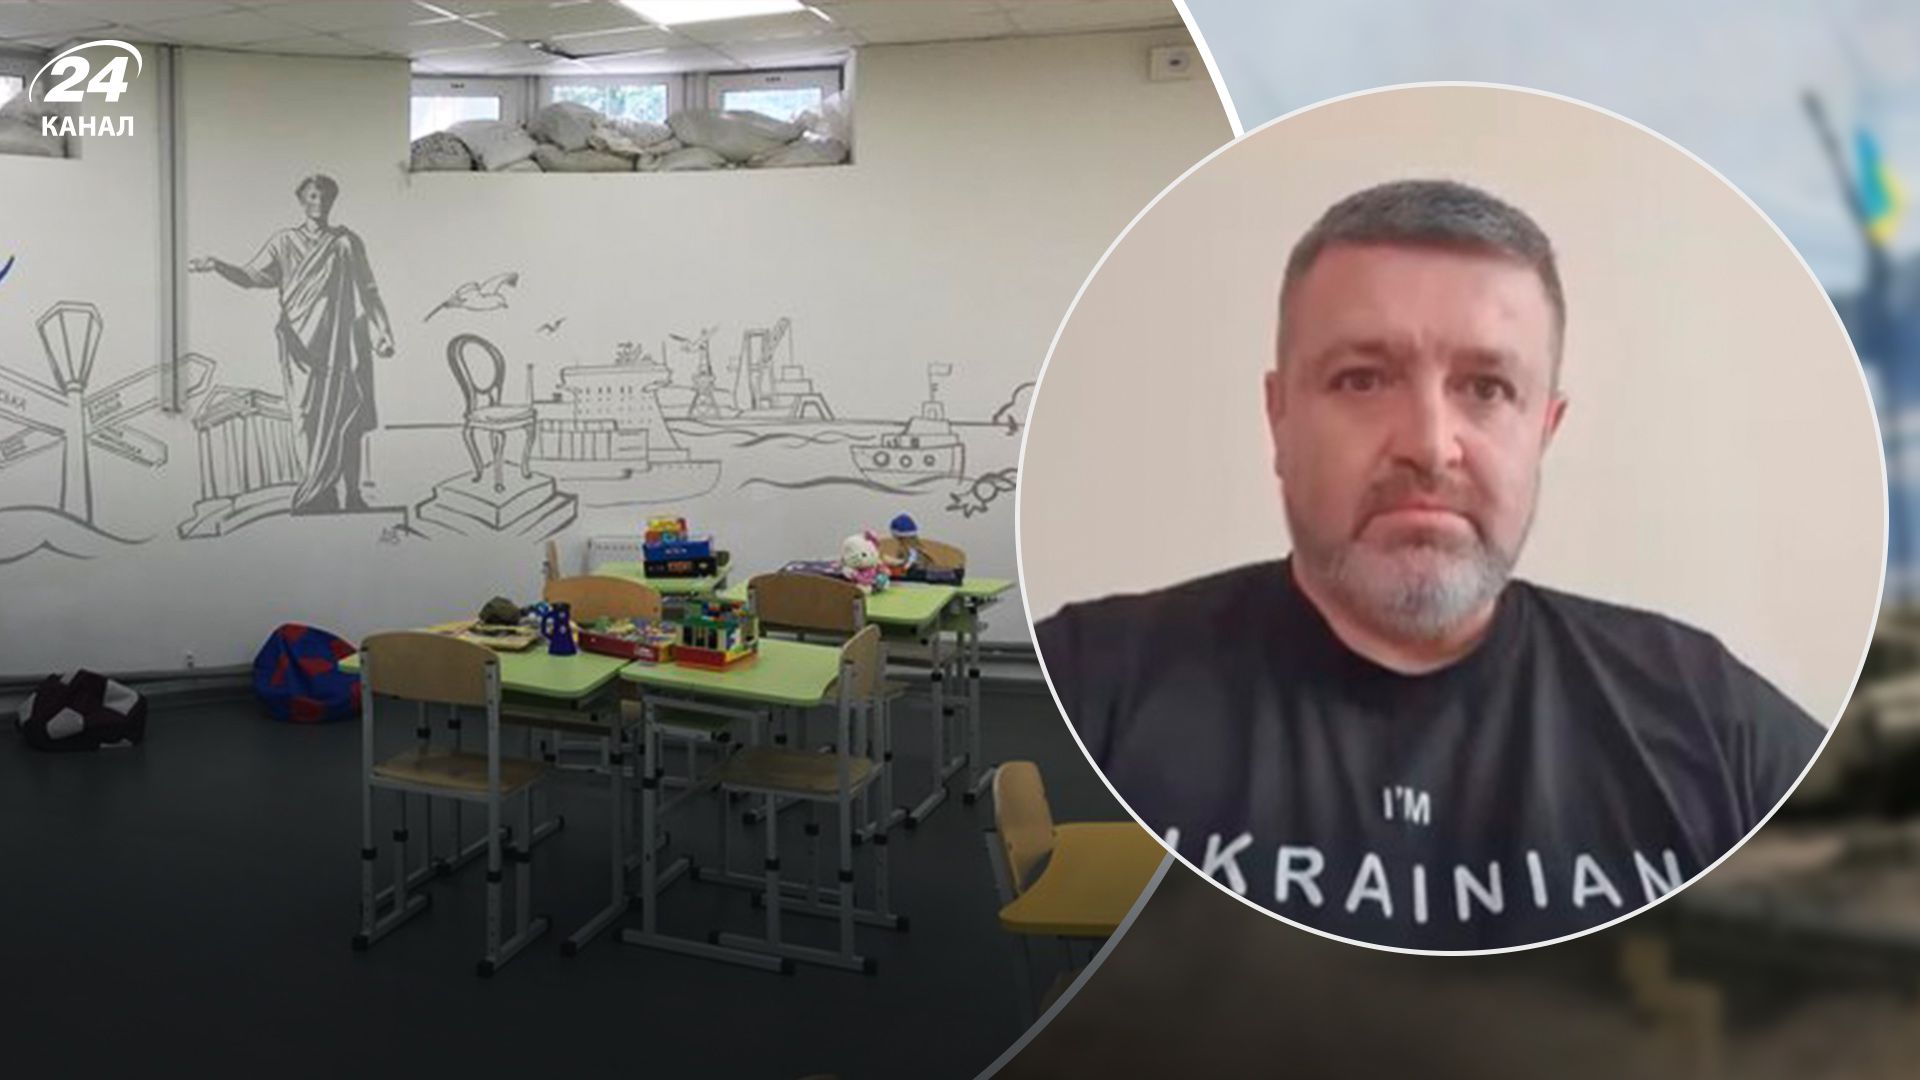 Формат будет смешанный, уроки могут проходить в укрытиях, – Братчук о начале обучения в Одессе